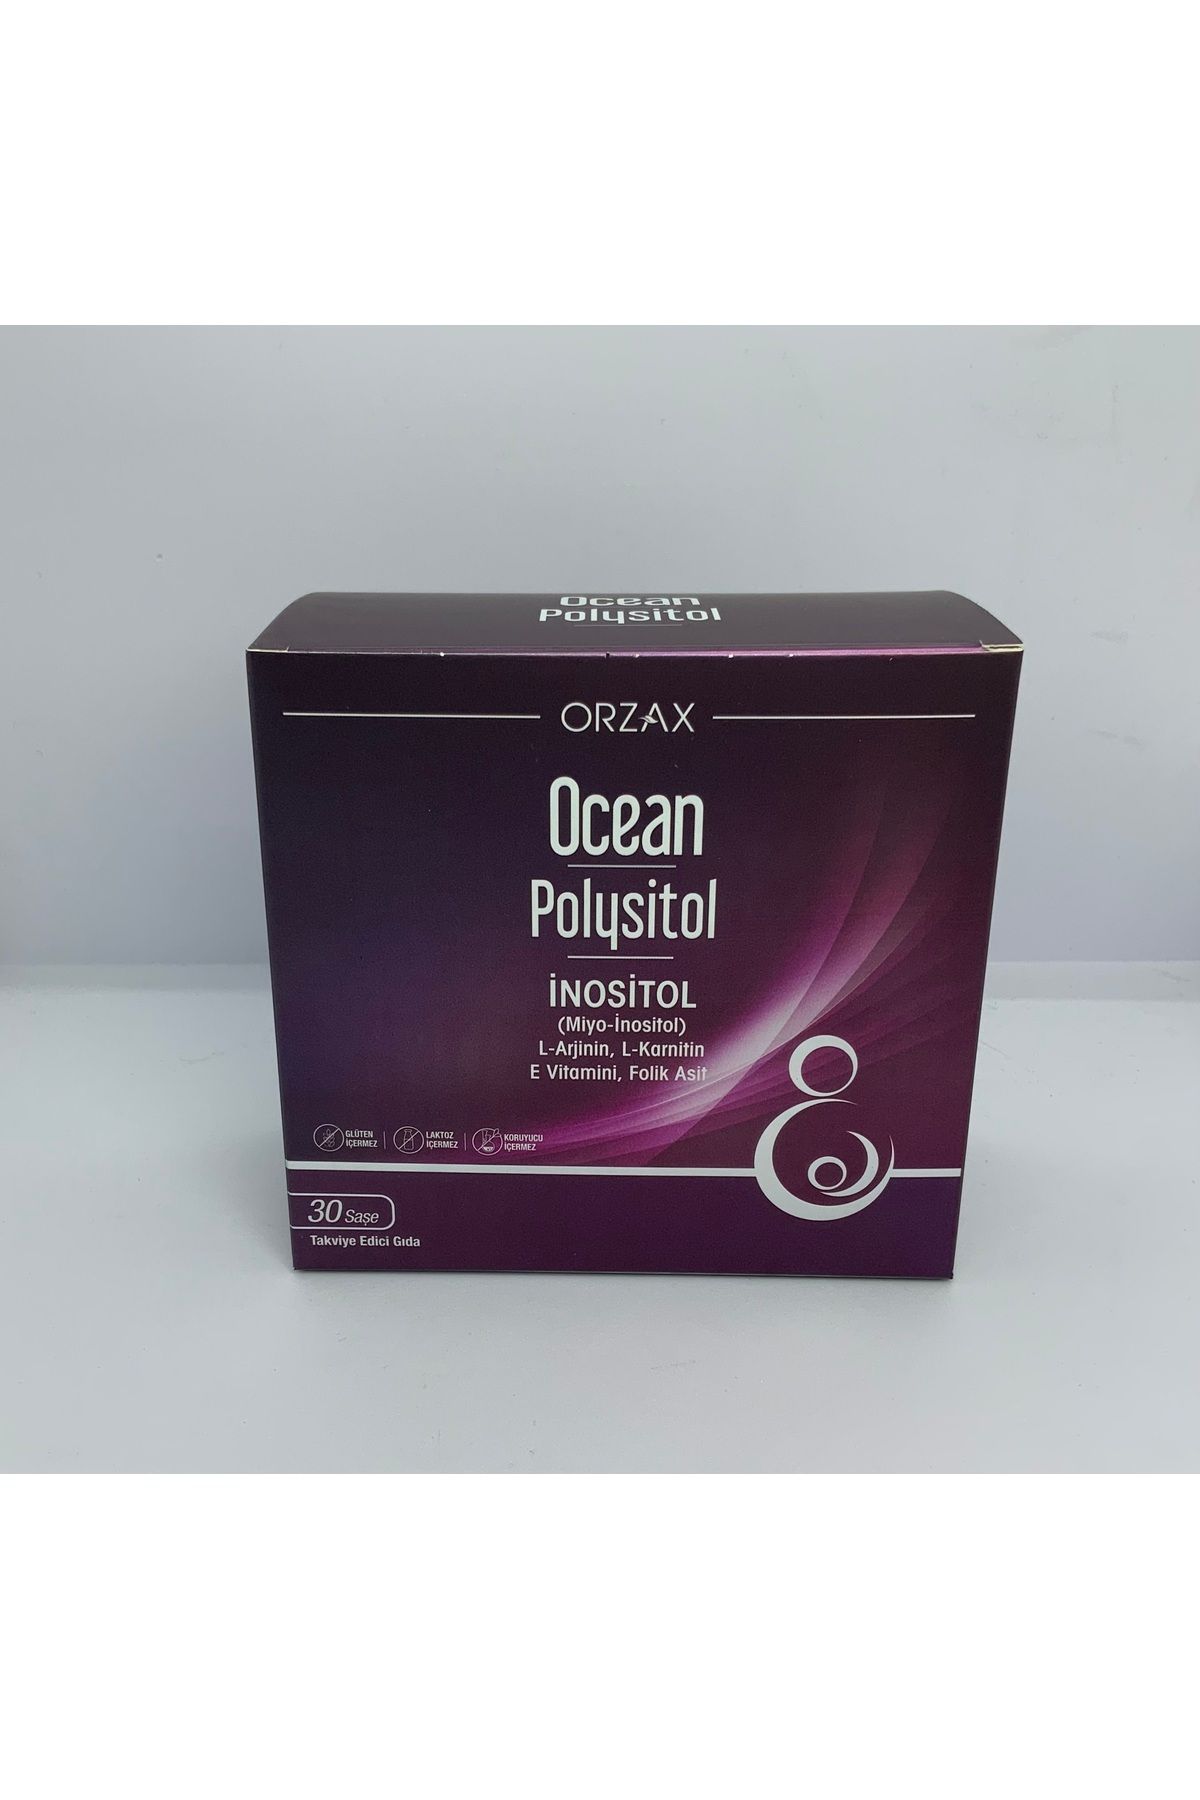 Orzax Ocean Polysitol Inositol 30 Saşe Takviye Edici Gıda